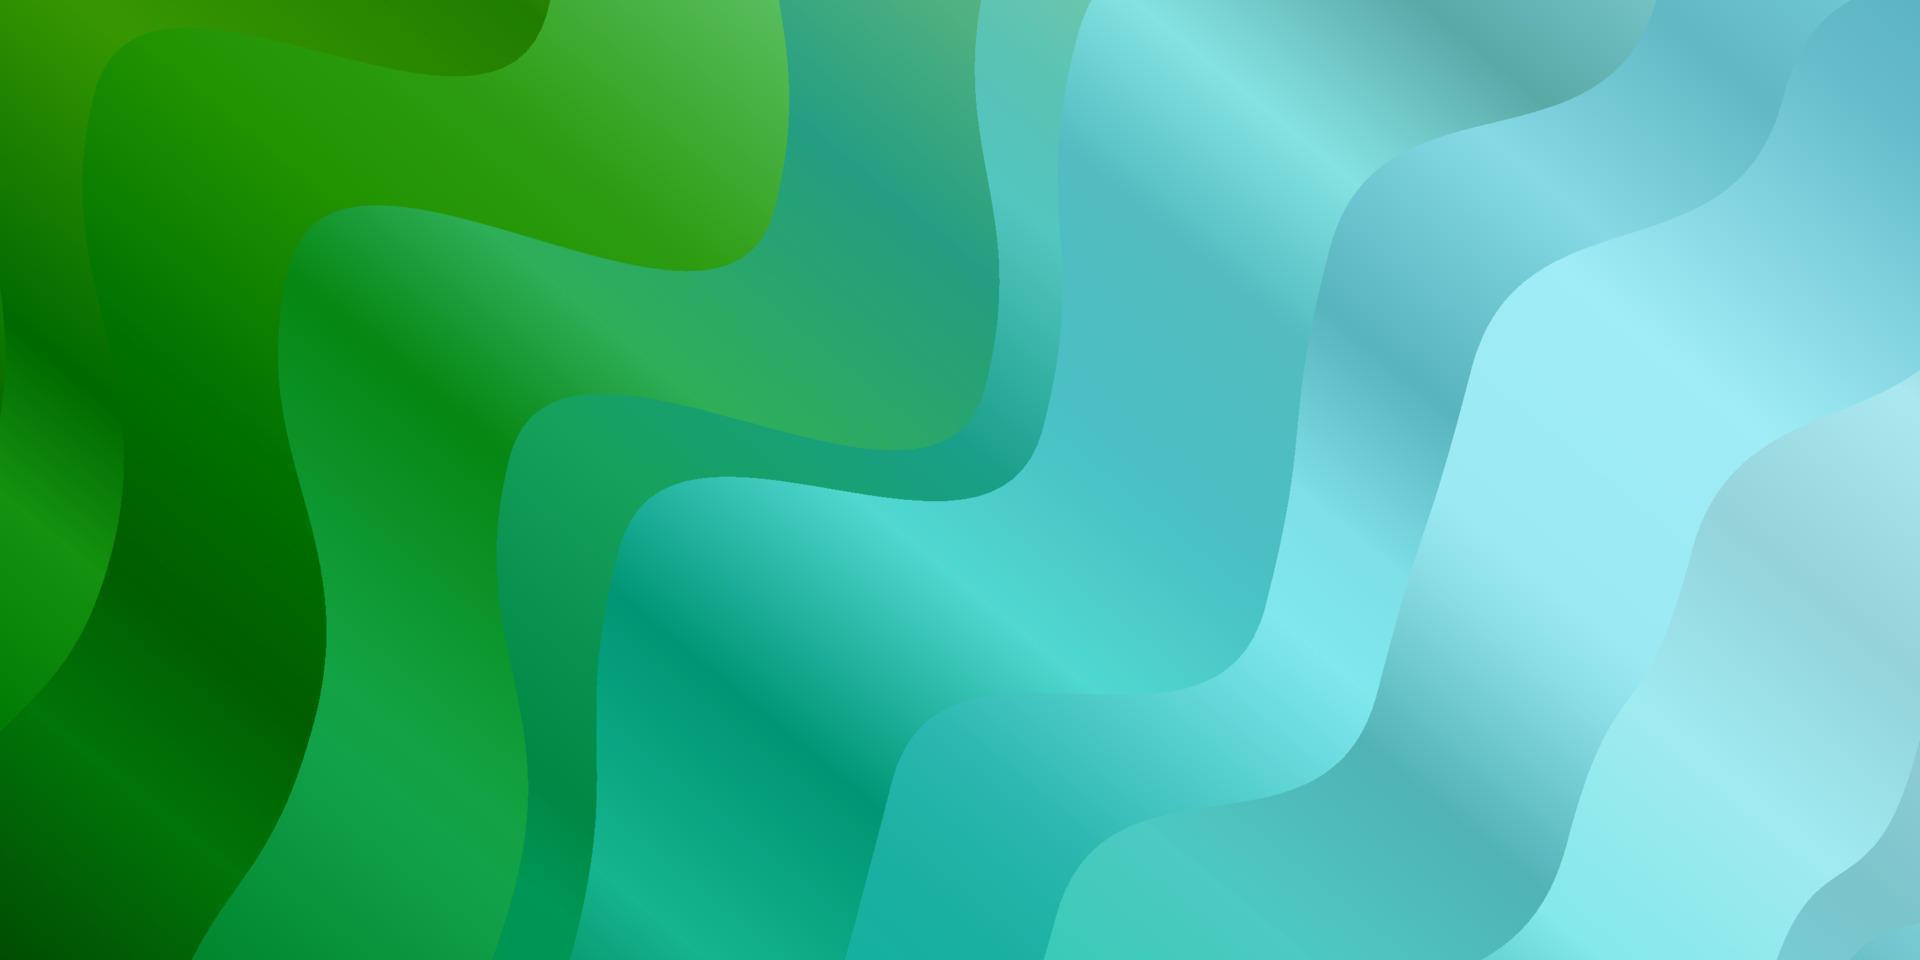 texture de vecteur bleu clair, vert avec des courbes.